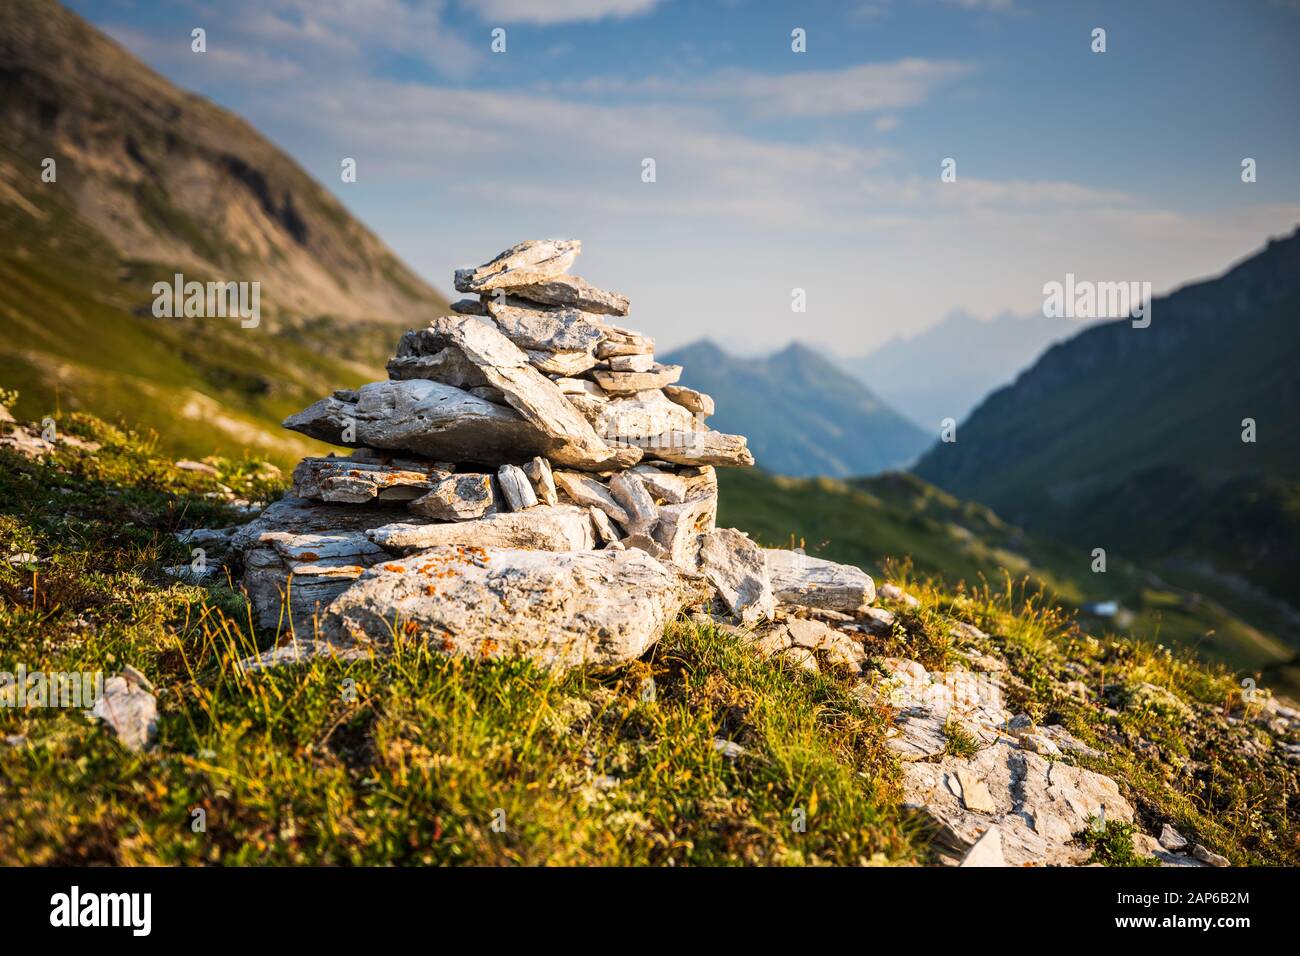 Cairn en pierre, pyramide, dans les Alpes autrichiennes près des lacs de Giglachsee Banque D'Images